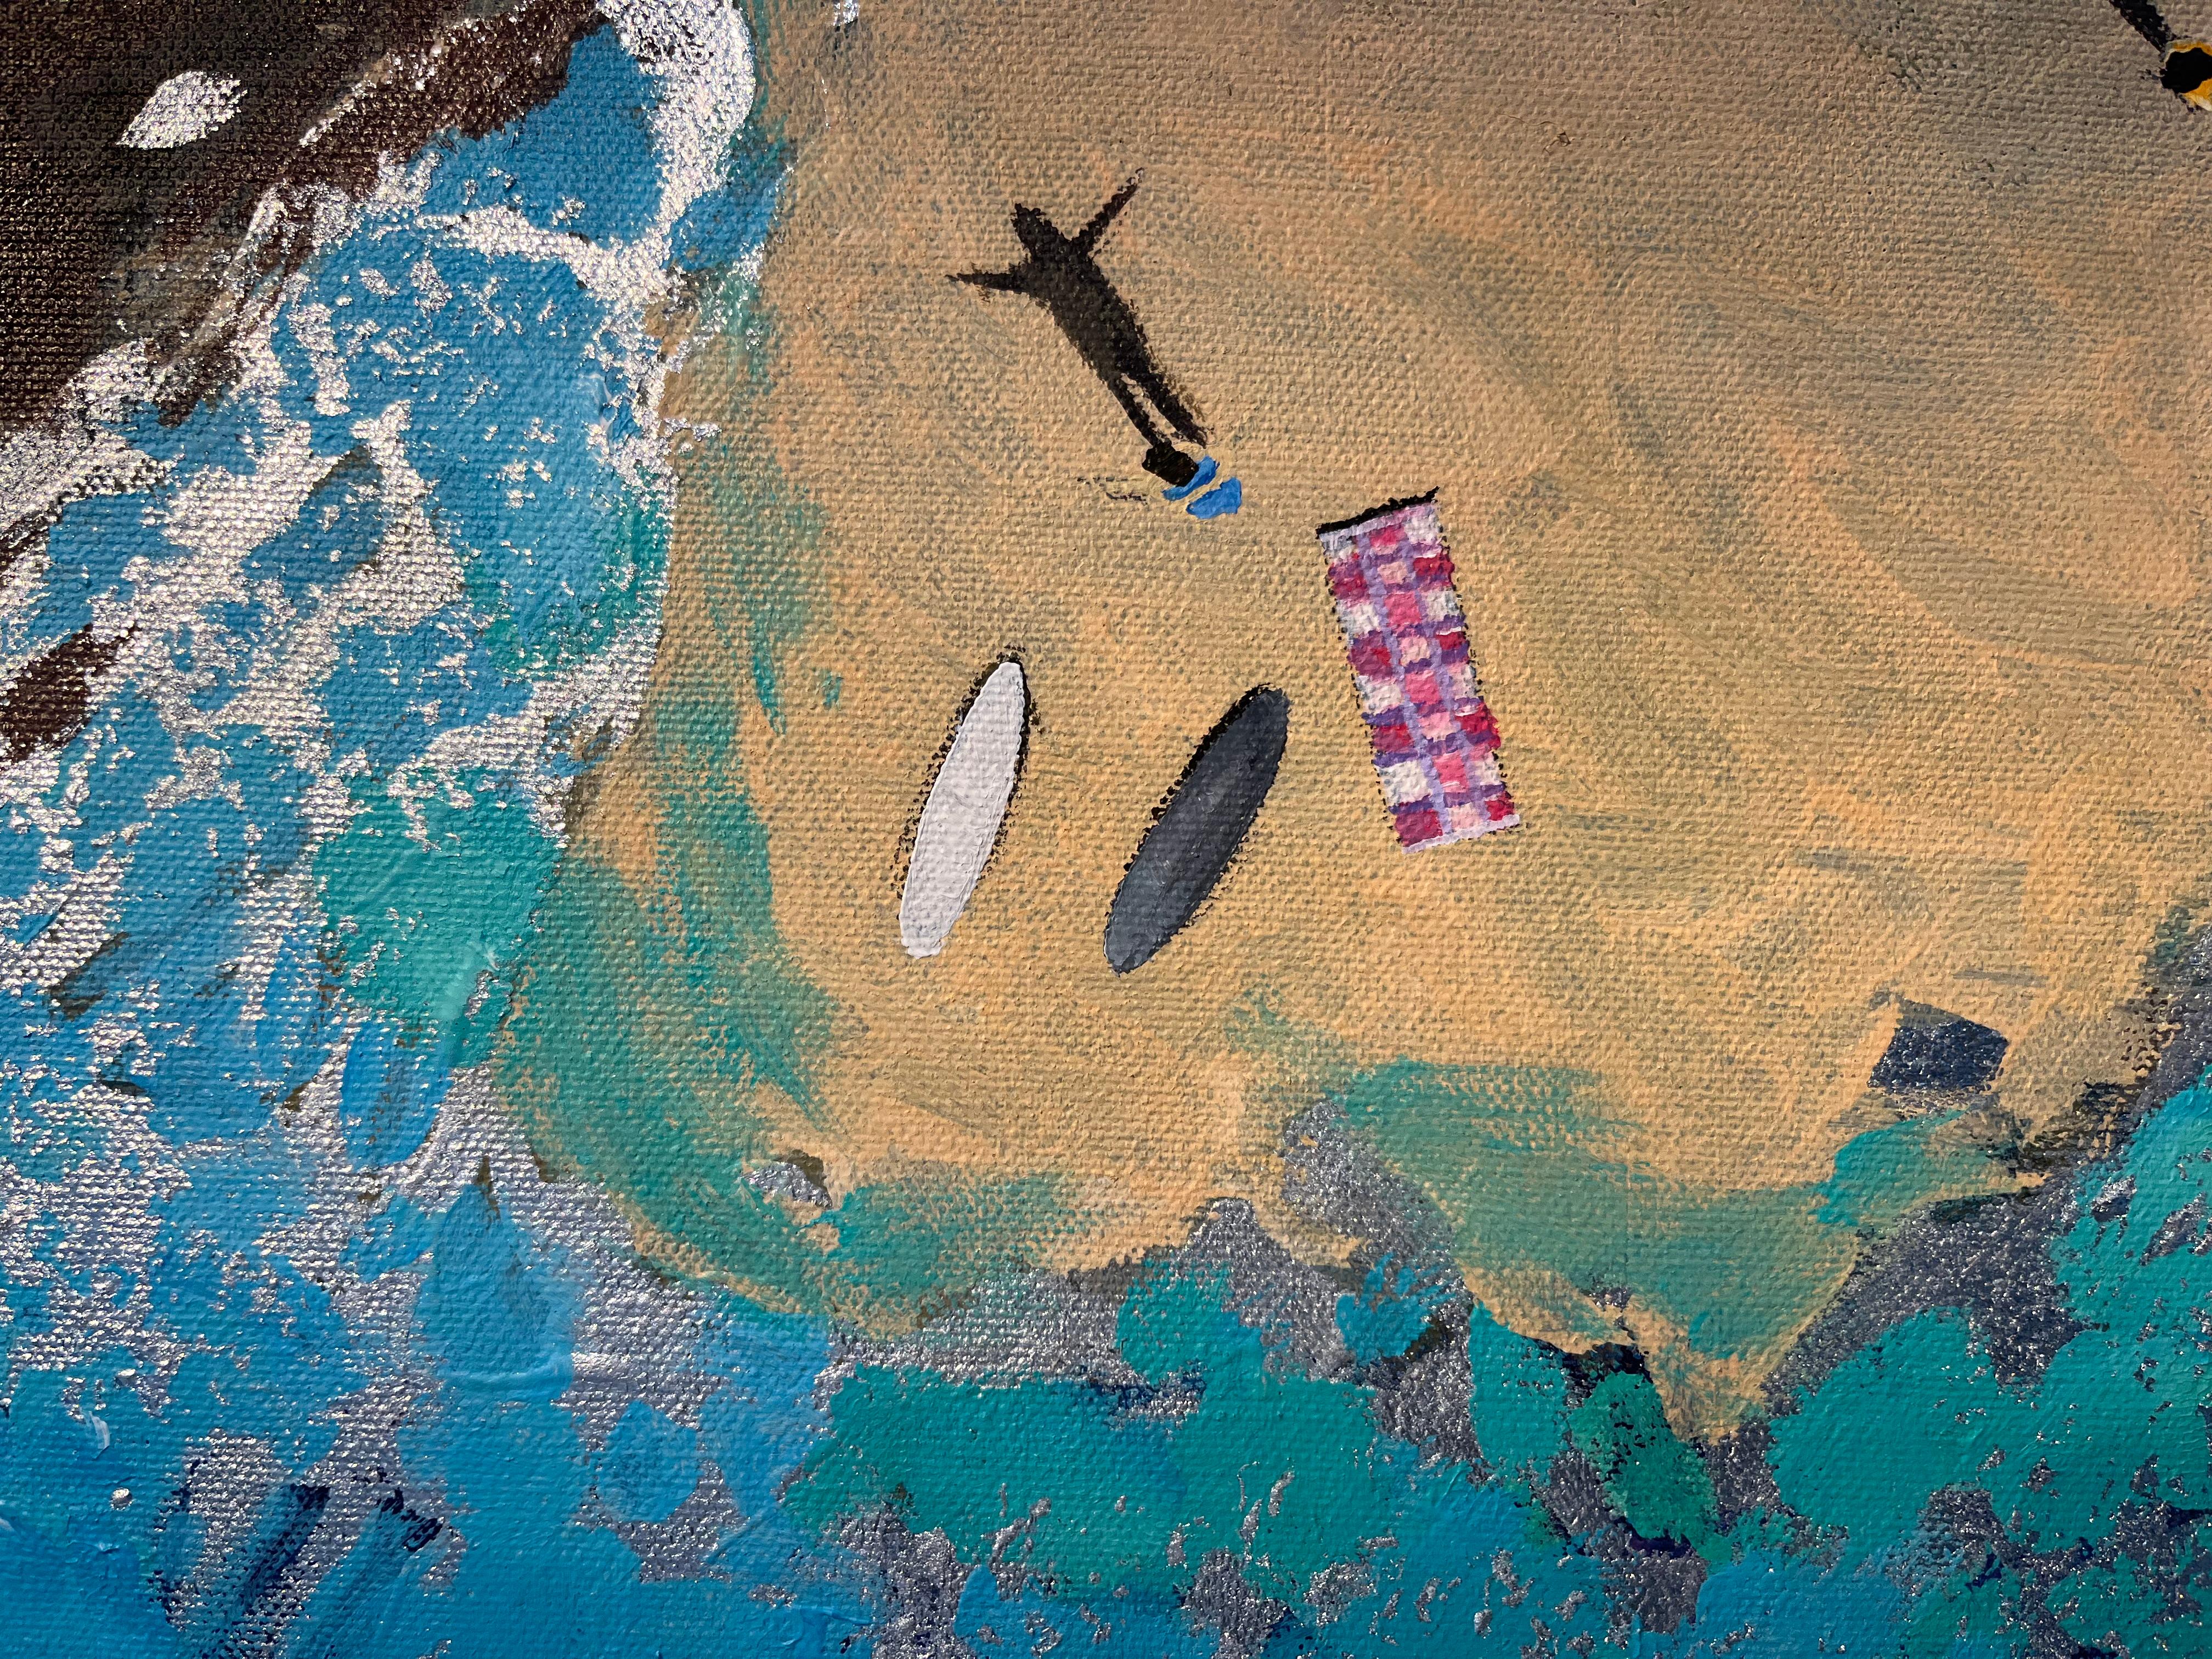 Silver Ripples-originale Impressionismus Meereslandschaft Ölgemälde-zeitgenössische Kunst (Blau), Figurative Painting, von Lenny Cornforth